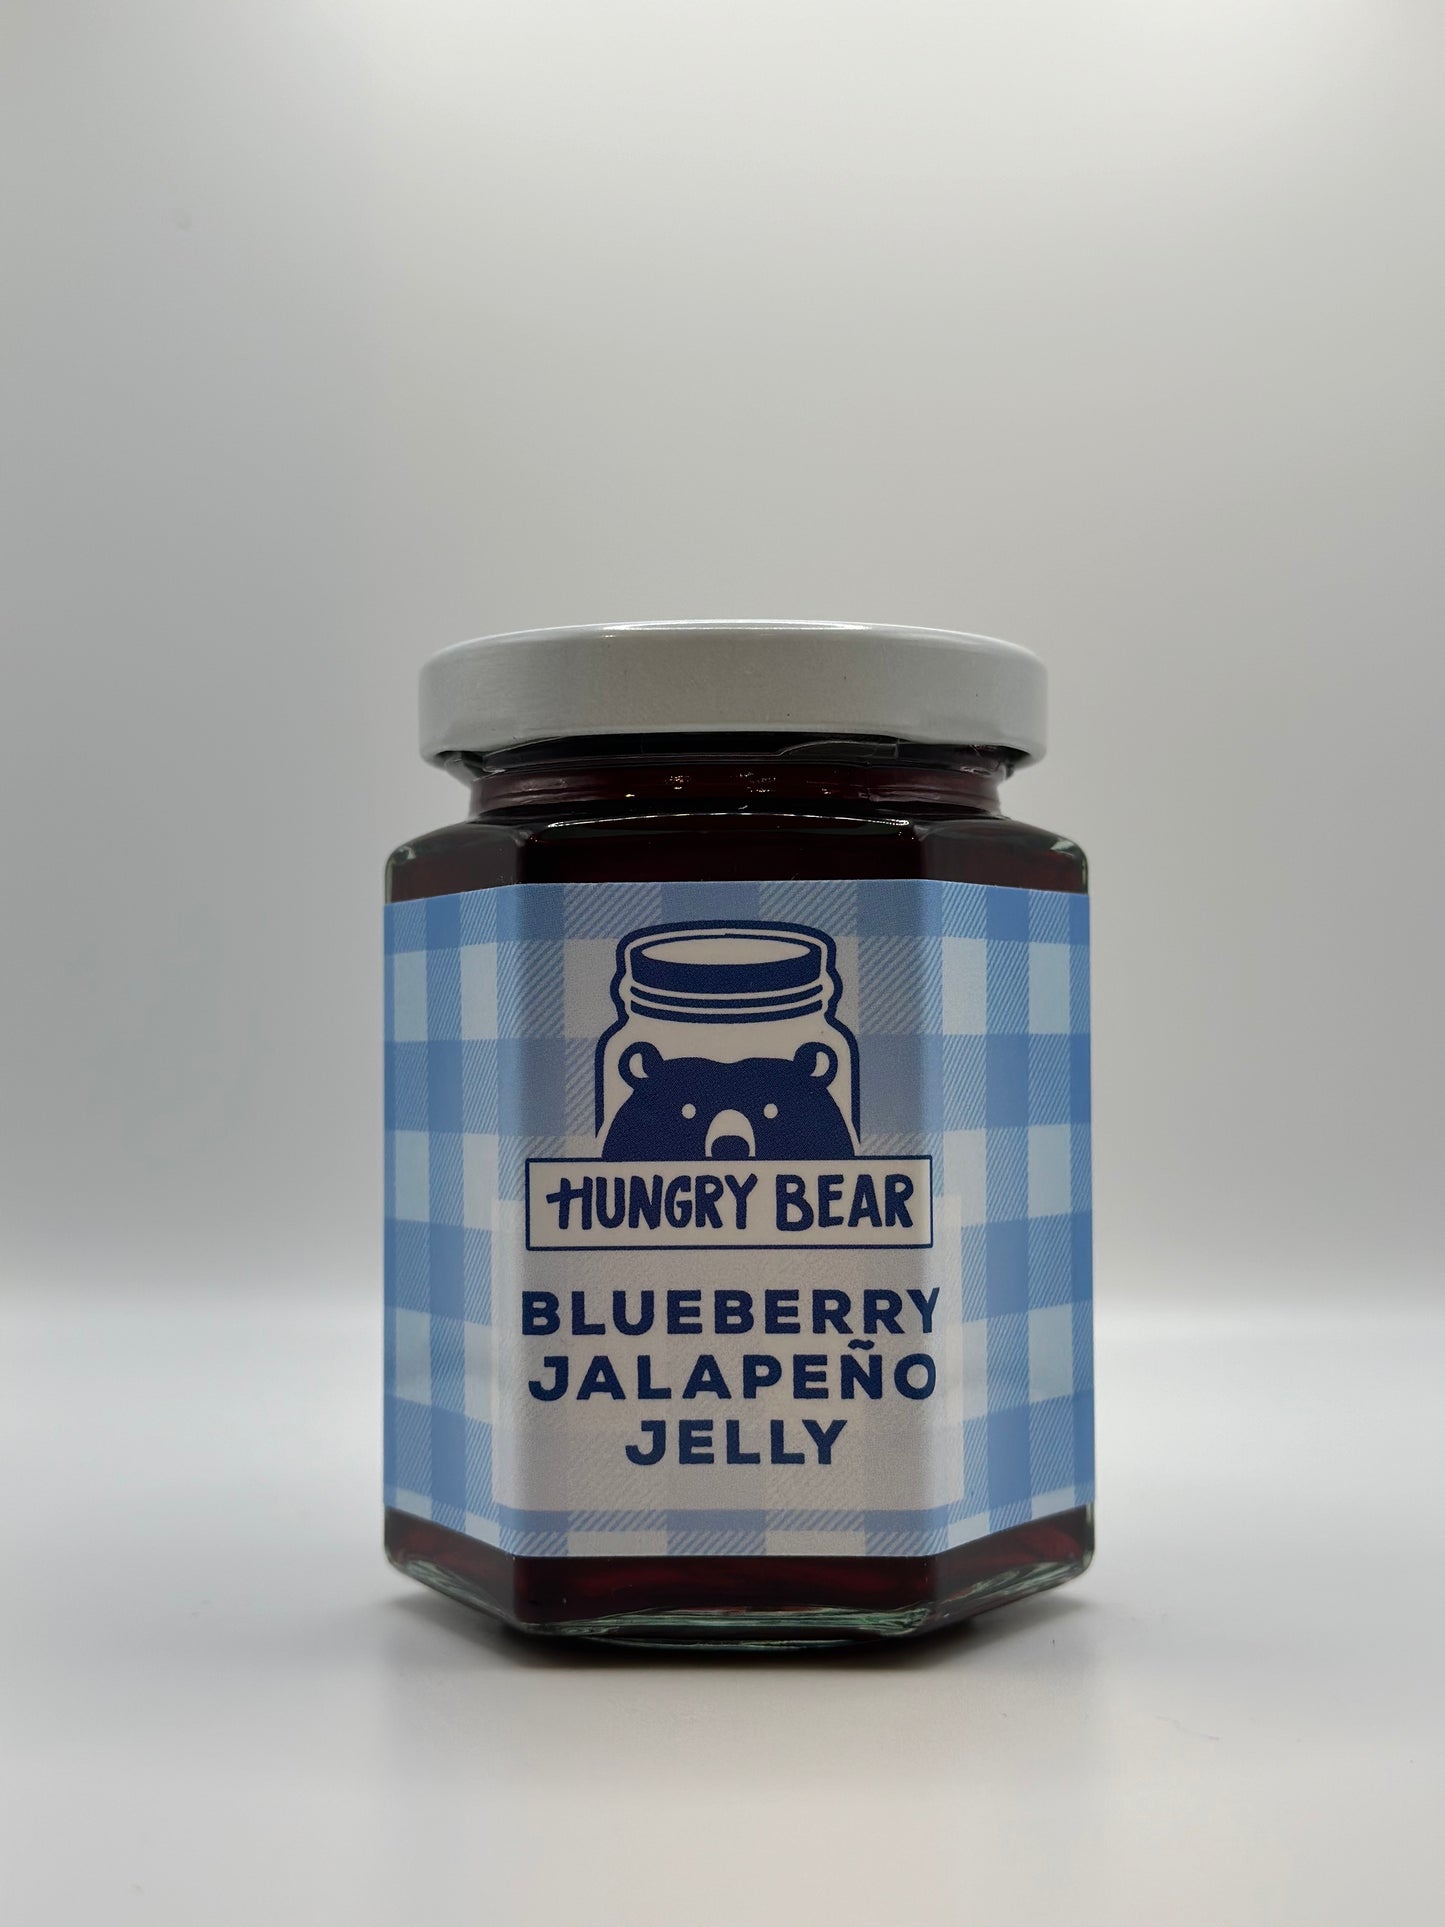 Blueberry Jalapeño Jelly